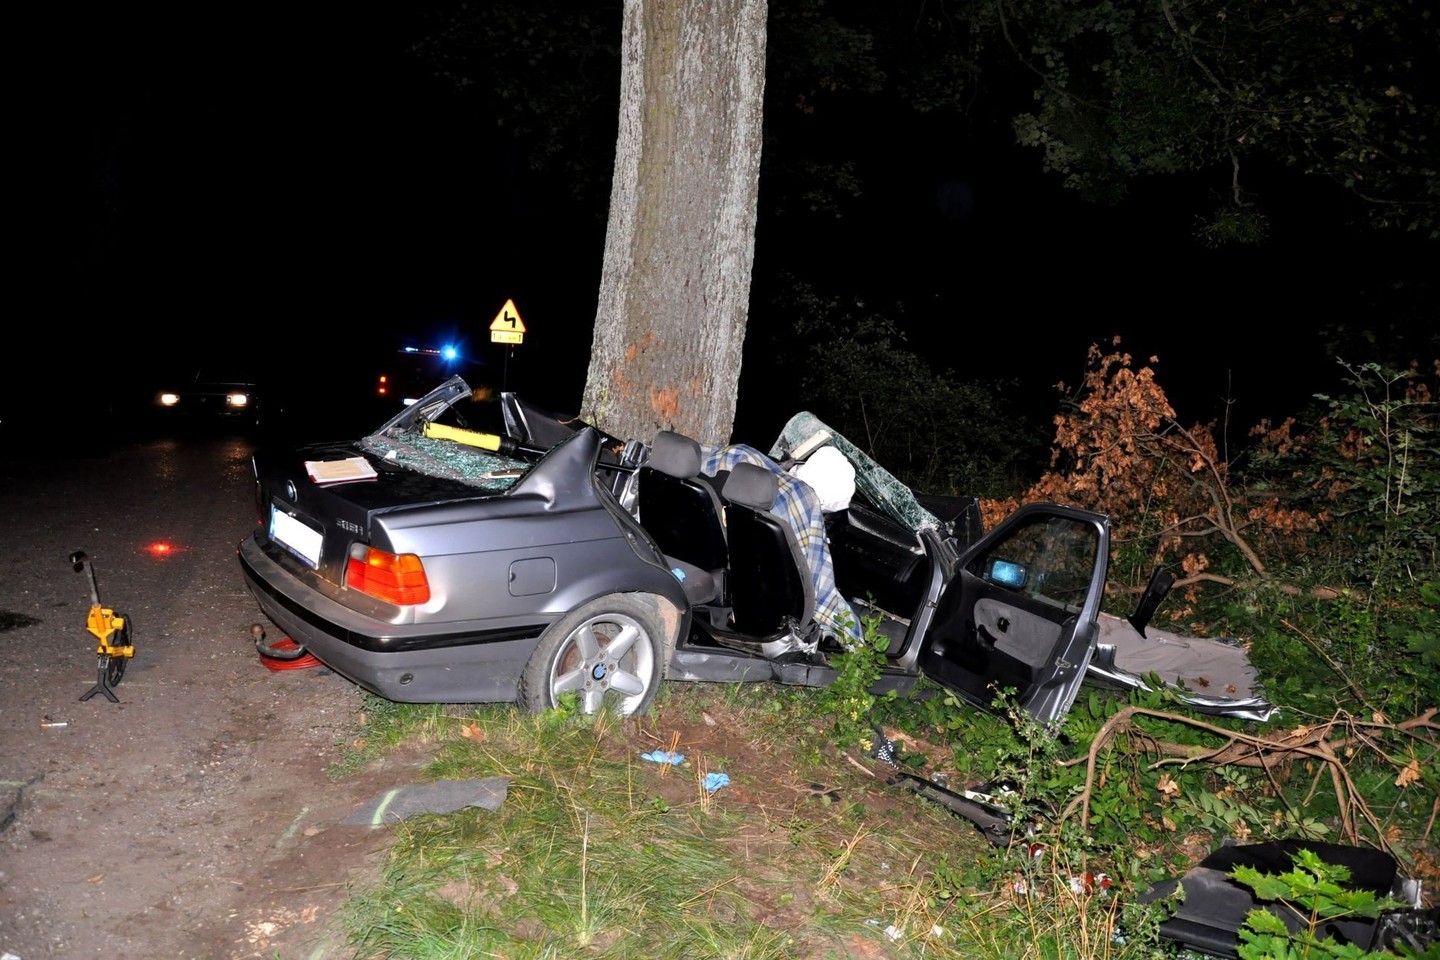 Vos spėjęs atsiimti vairuotojo pažymėjimą 18-metis lenkas žuvo su BMW atsitrenkęs į medį.<br>„Policja.gov.pl“ nuotr.